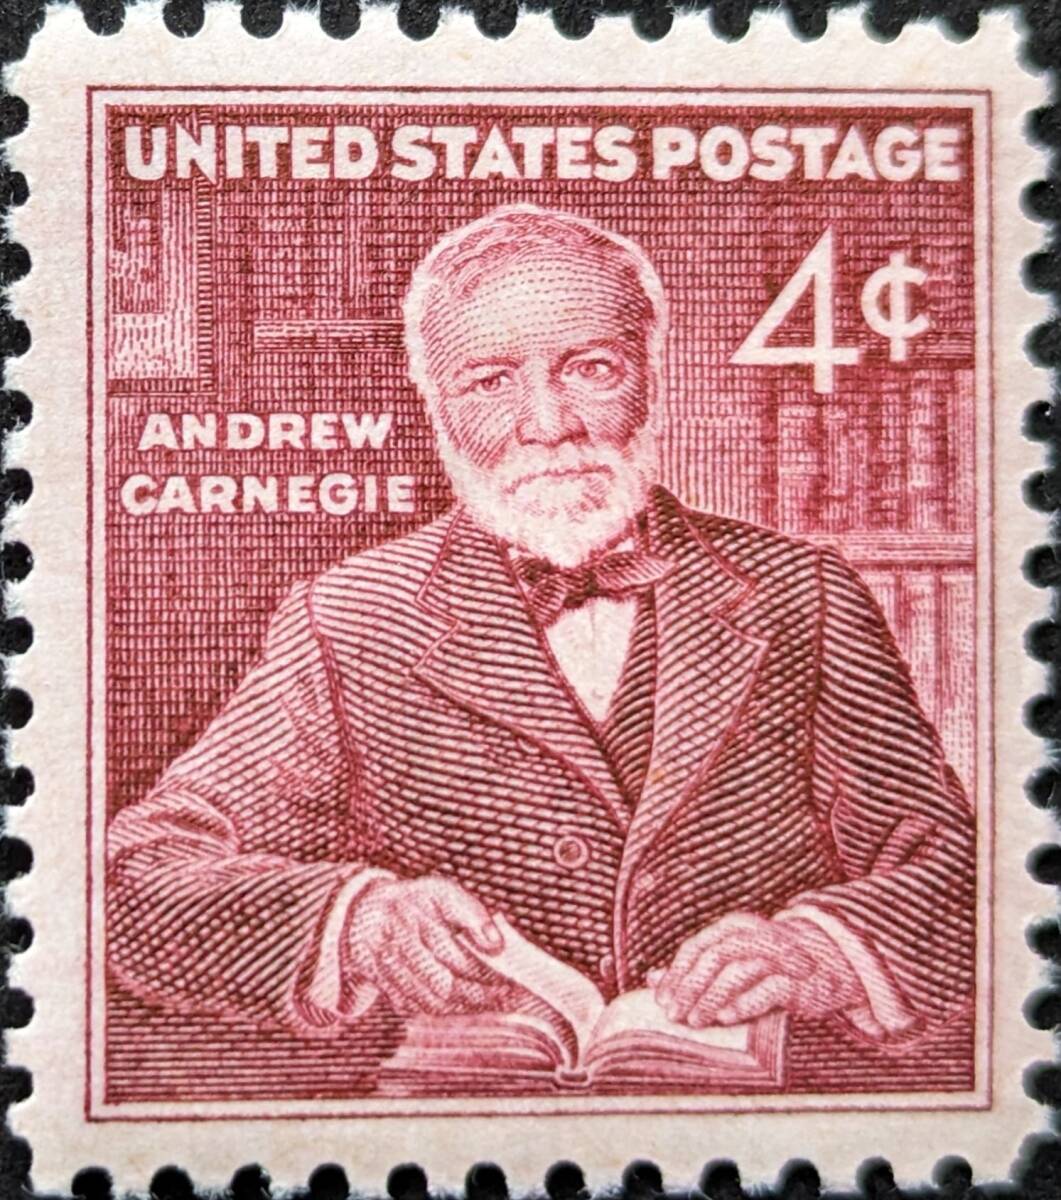 【外国切手】 アメリカ合衆国 1960年11月25日 発行 アンドリュー・カーネギー 未使用_画像1